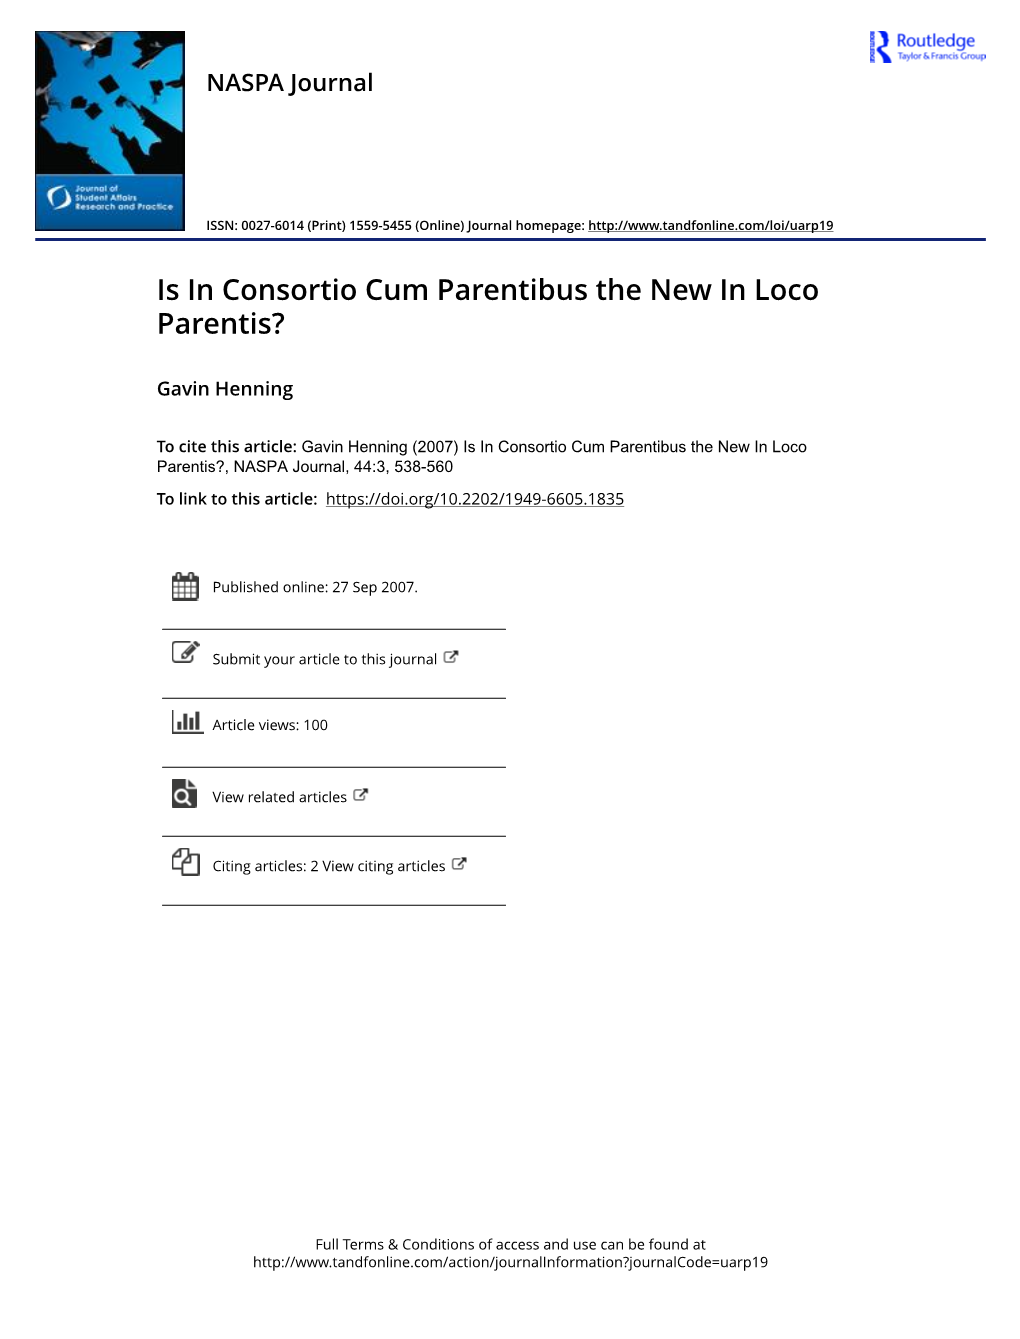 Is in Consortio Cum Parentibus the New in Loco Parentis?